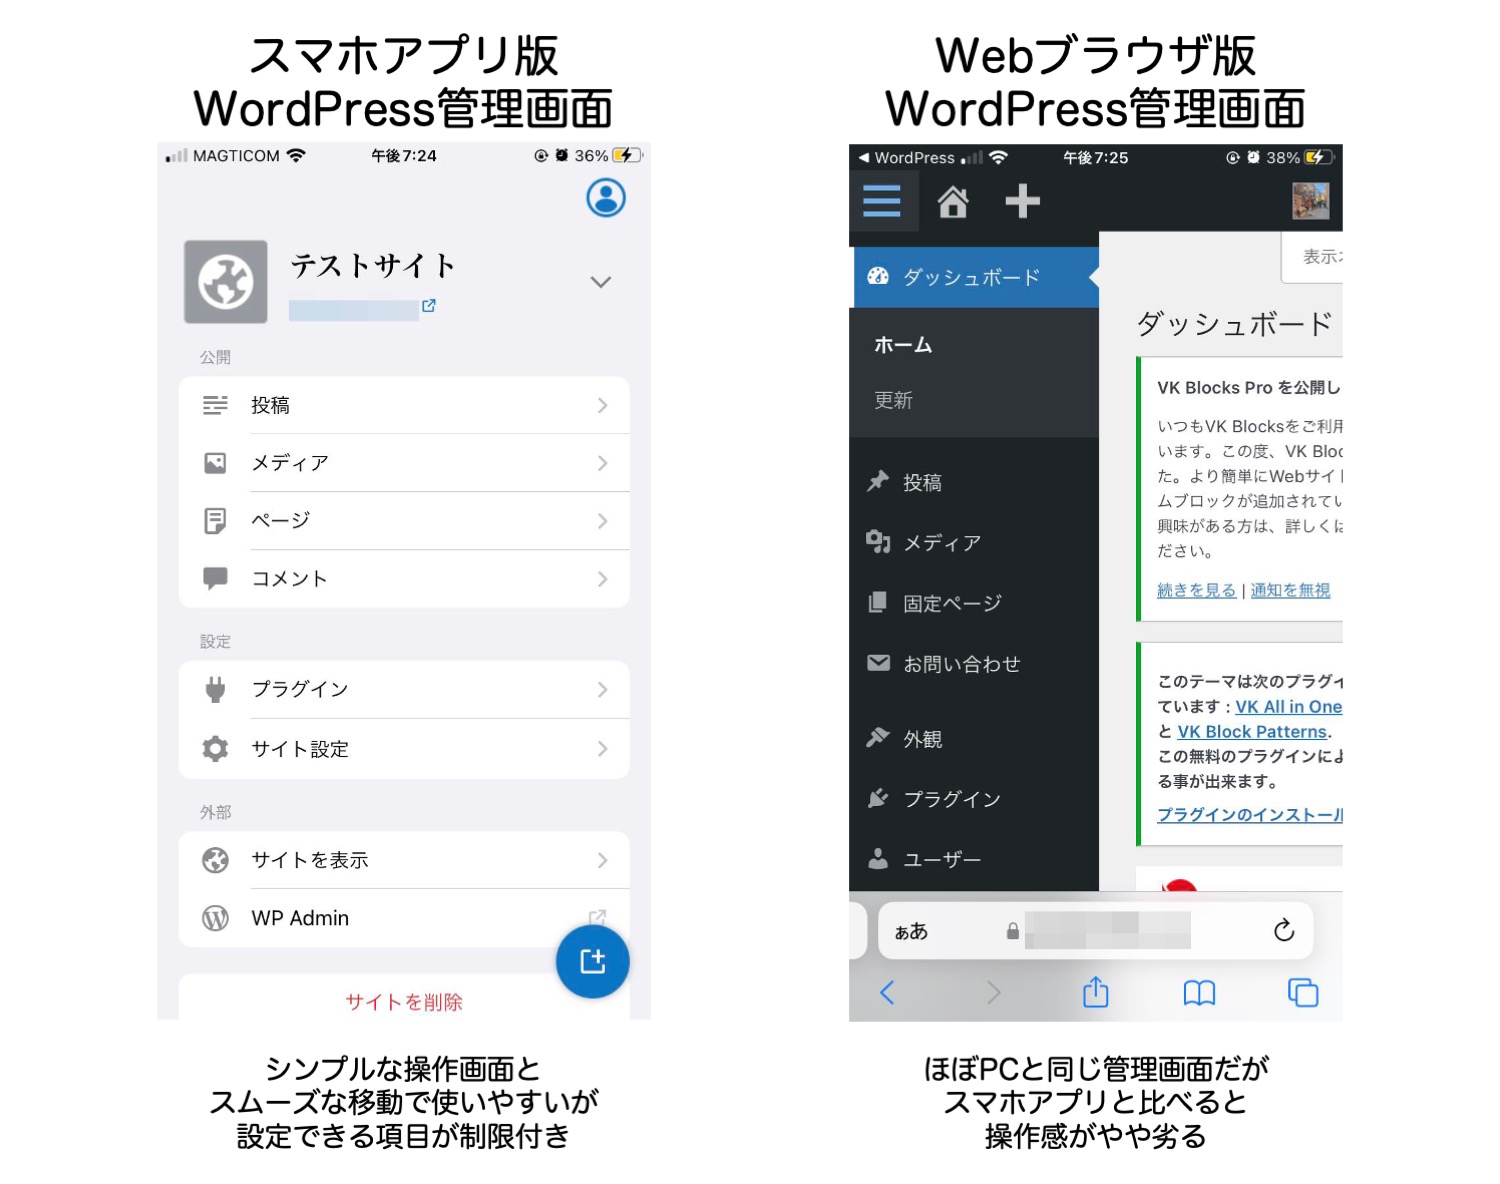 スマホアプリ版とWeb部ブラウザ版の画面比較